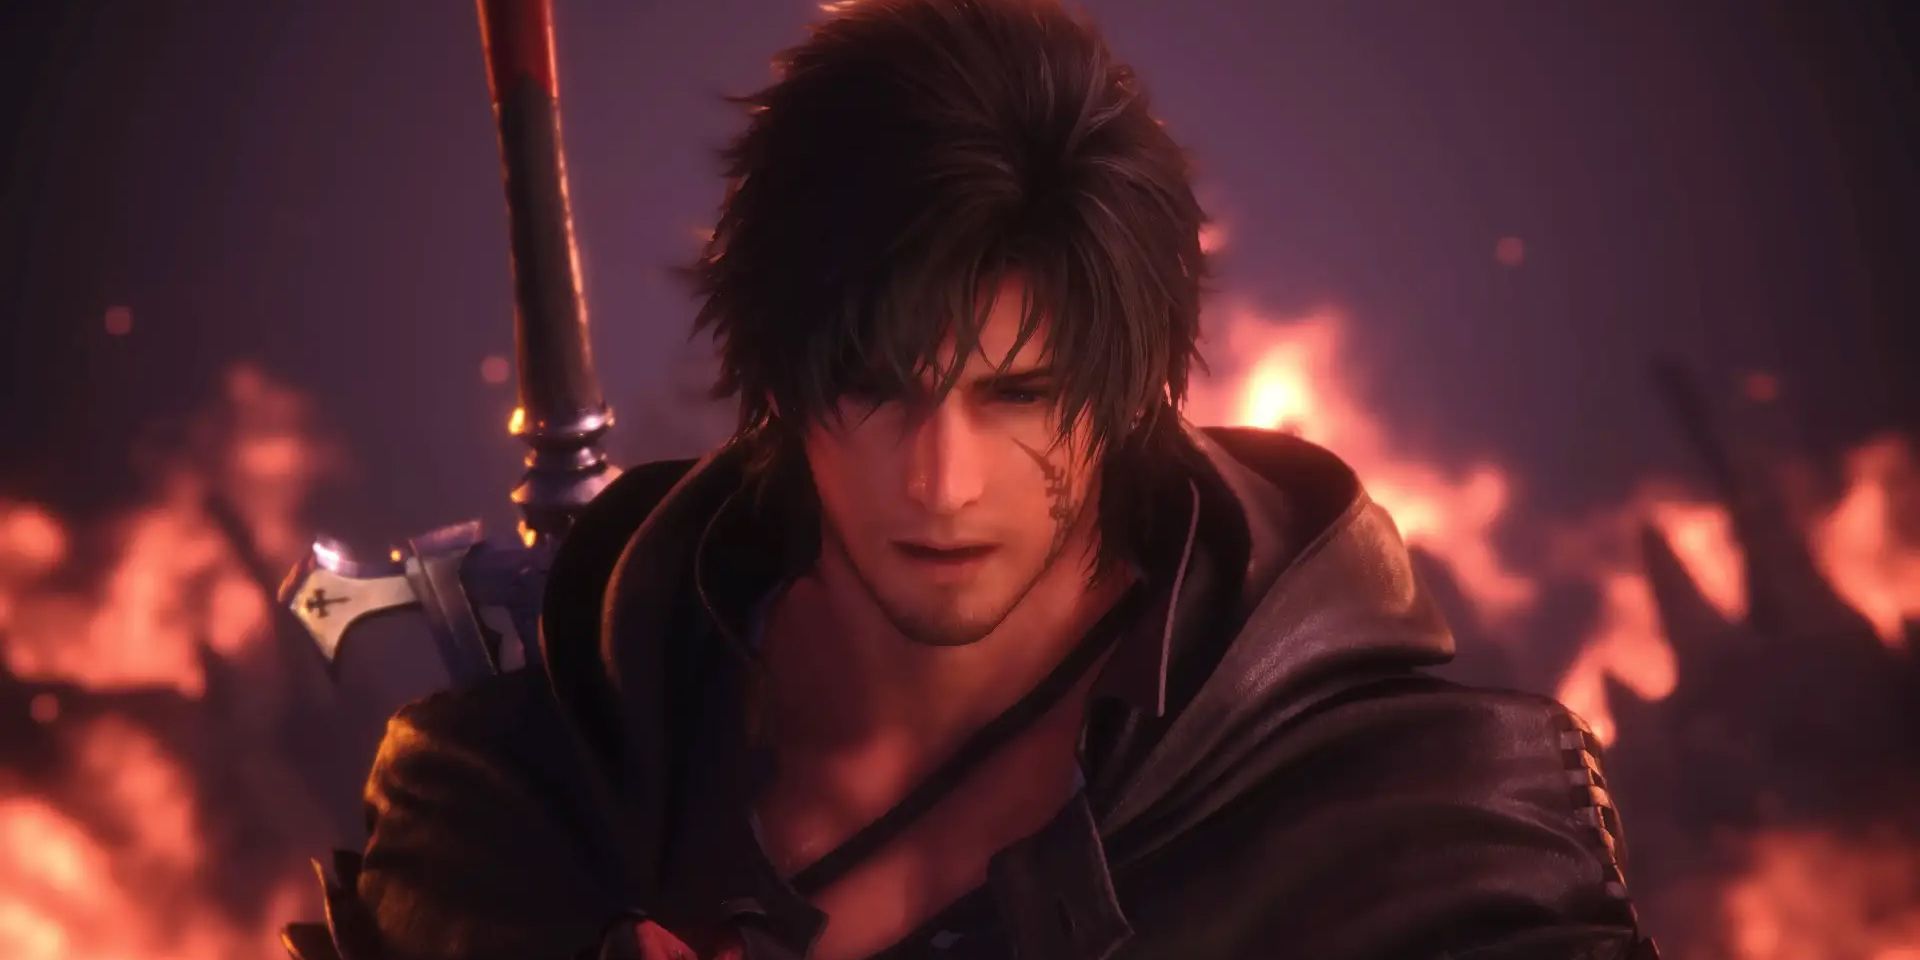 Una captura de pantalla de Final Fantasy 16, que muestra a Clive Rosfield con cicatrices de batalla y aspecto angustiado alejándose de un incendio.  El fondo está oscurecido por la oscuridad y el humo.